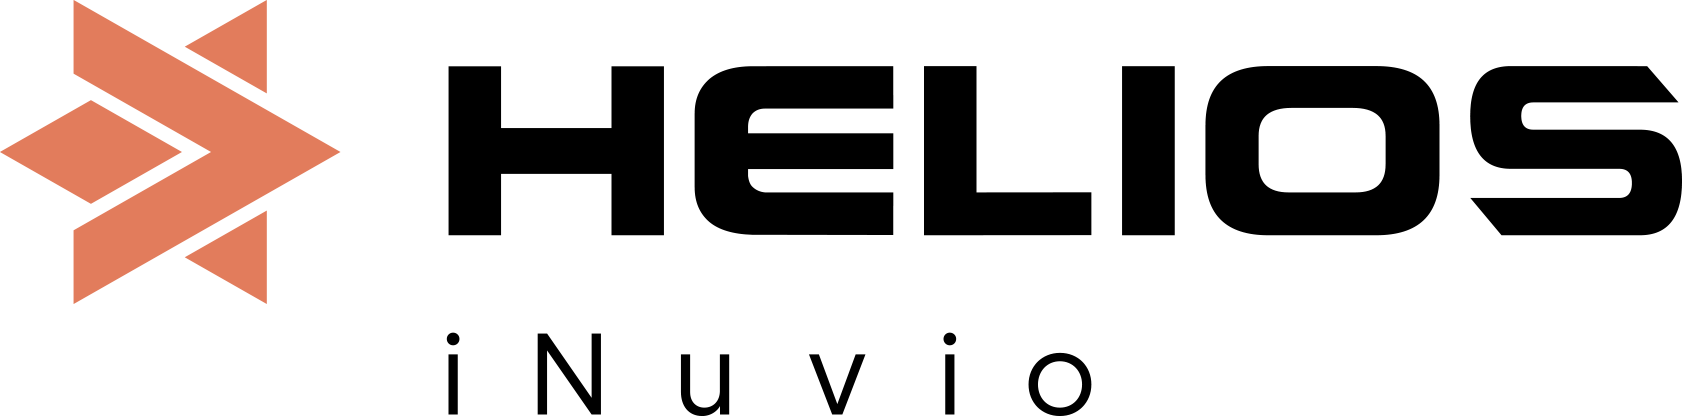 helios inuvio logo